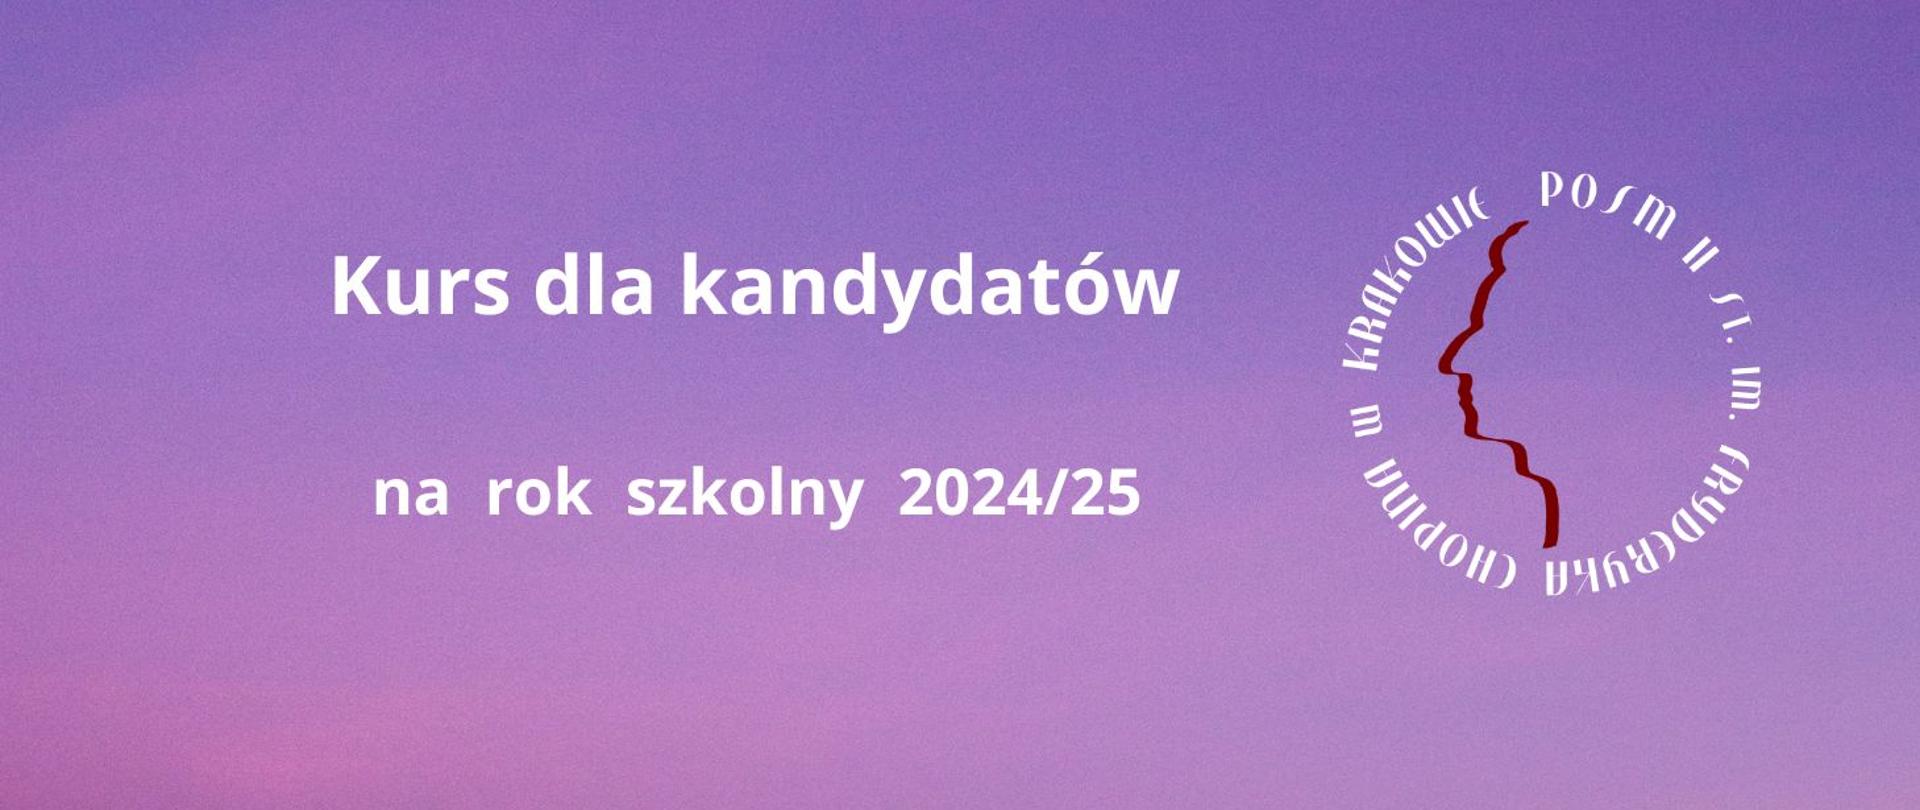 Baner, fioletowe tło, w prawym górnym rogu logo szkoły, na środku tekst: Kurs dla kandydatów na rok szkolny 2024 / 25